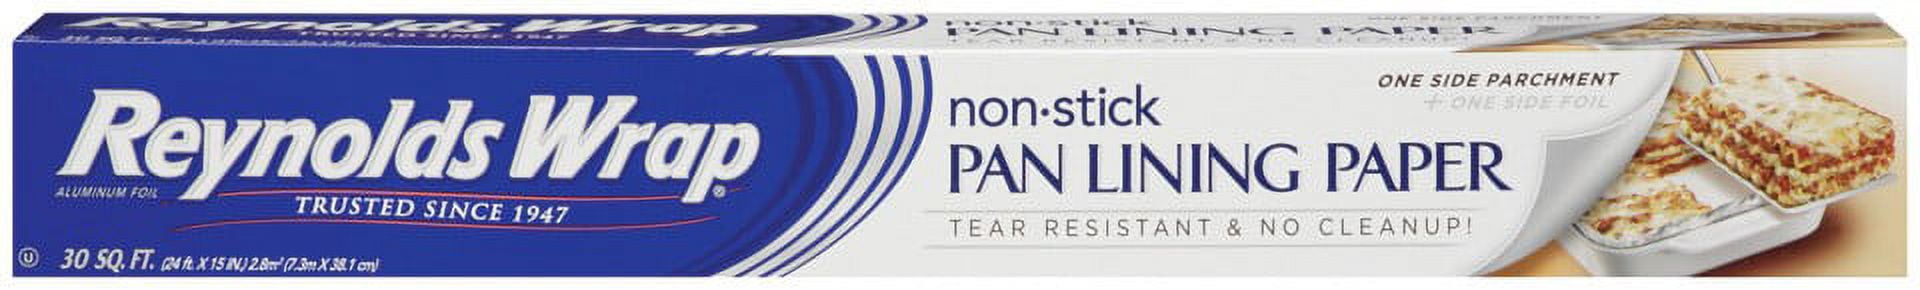 Reynolds Wrap Nonstick Pan Lining Paper, reviewed - Baking Bites